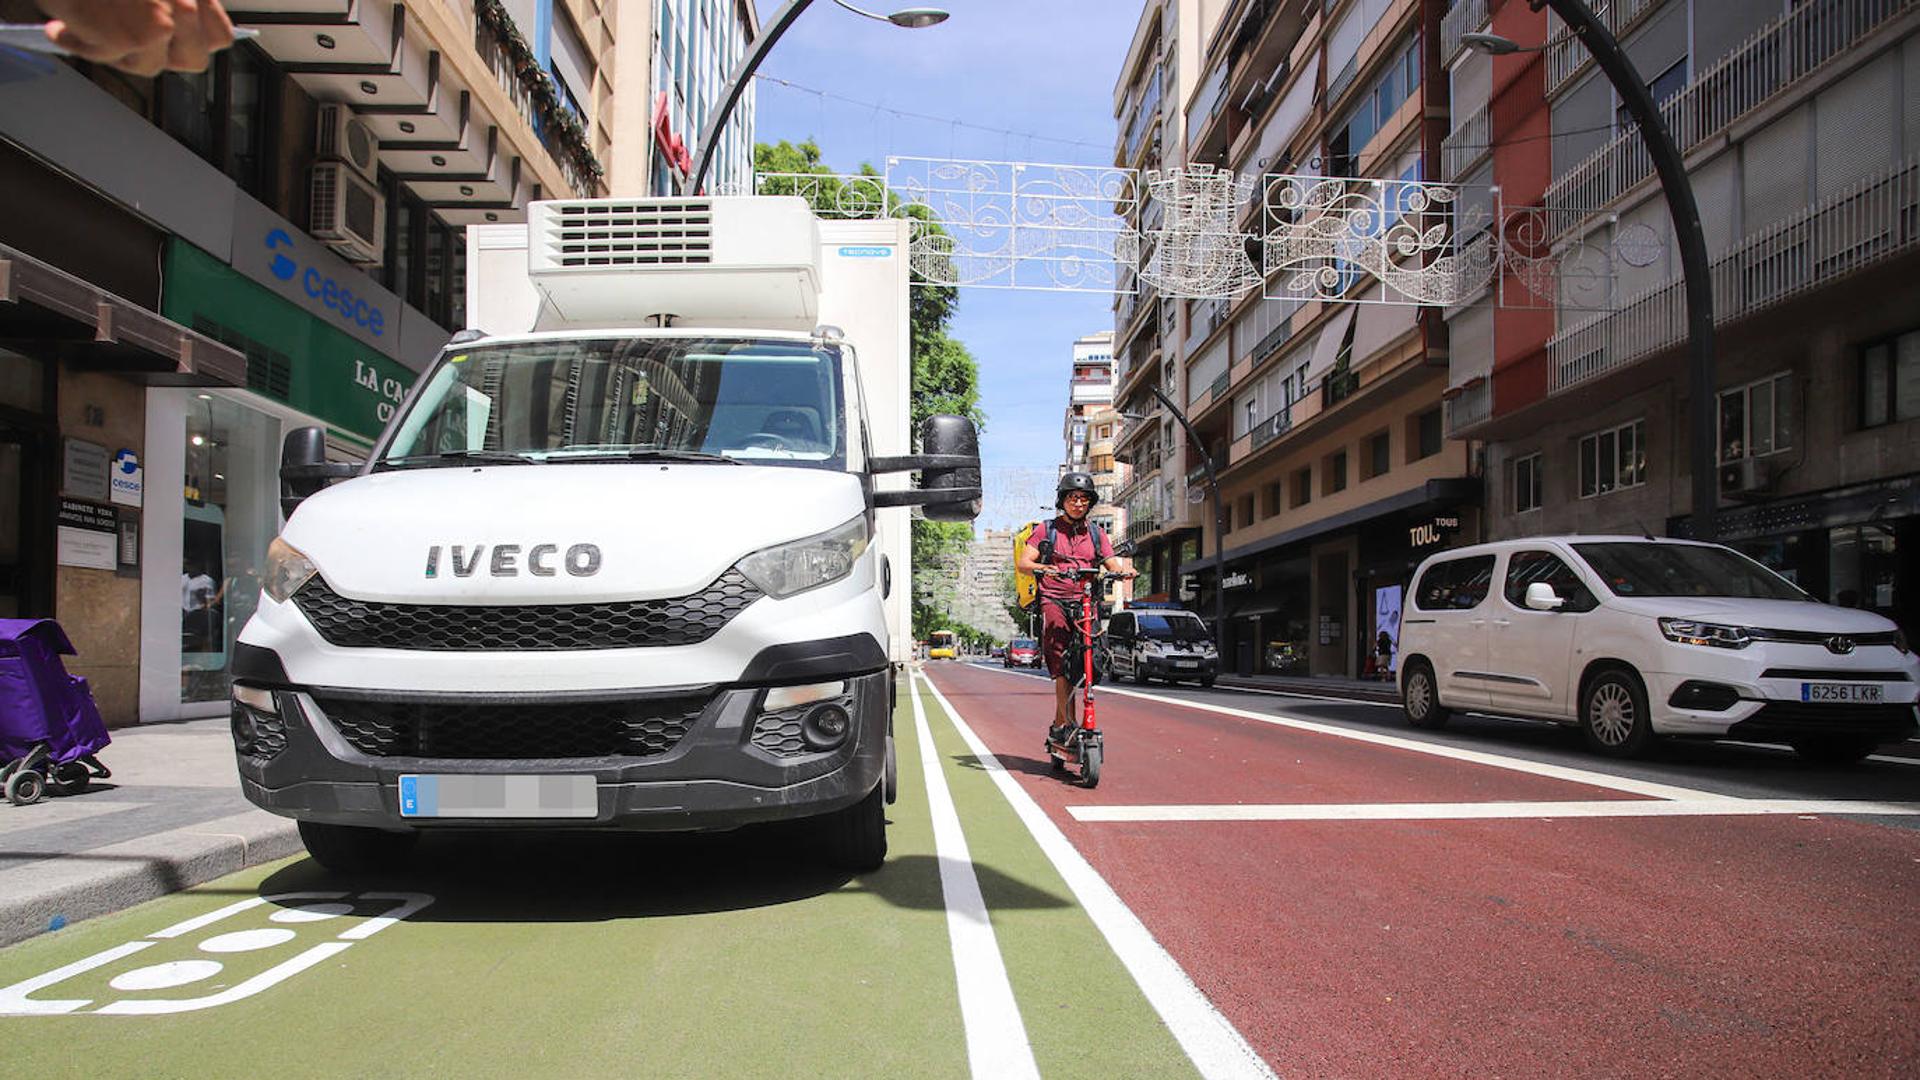 El Ayuntamiento de Murcia pondrá en marcha una campaña para un correcto uso de los carriles bus y bici